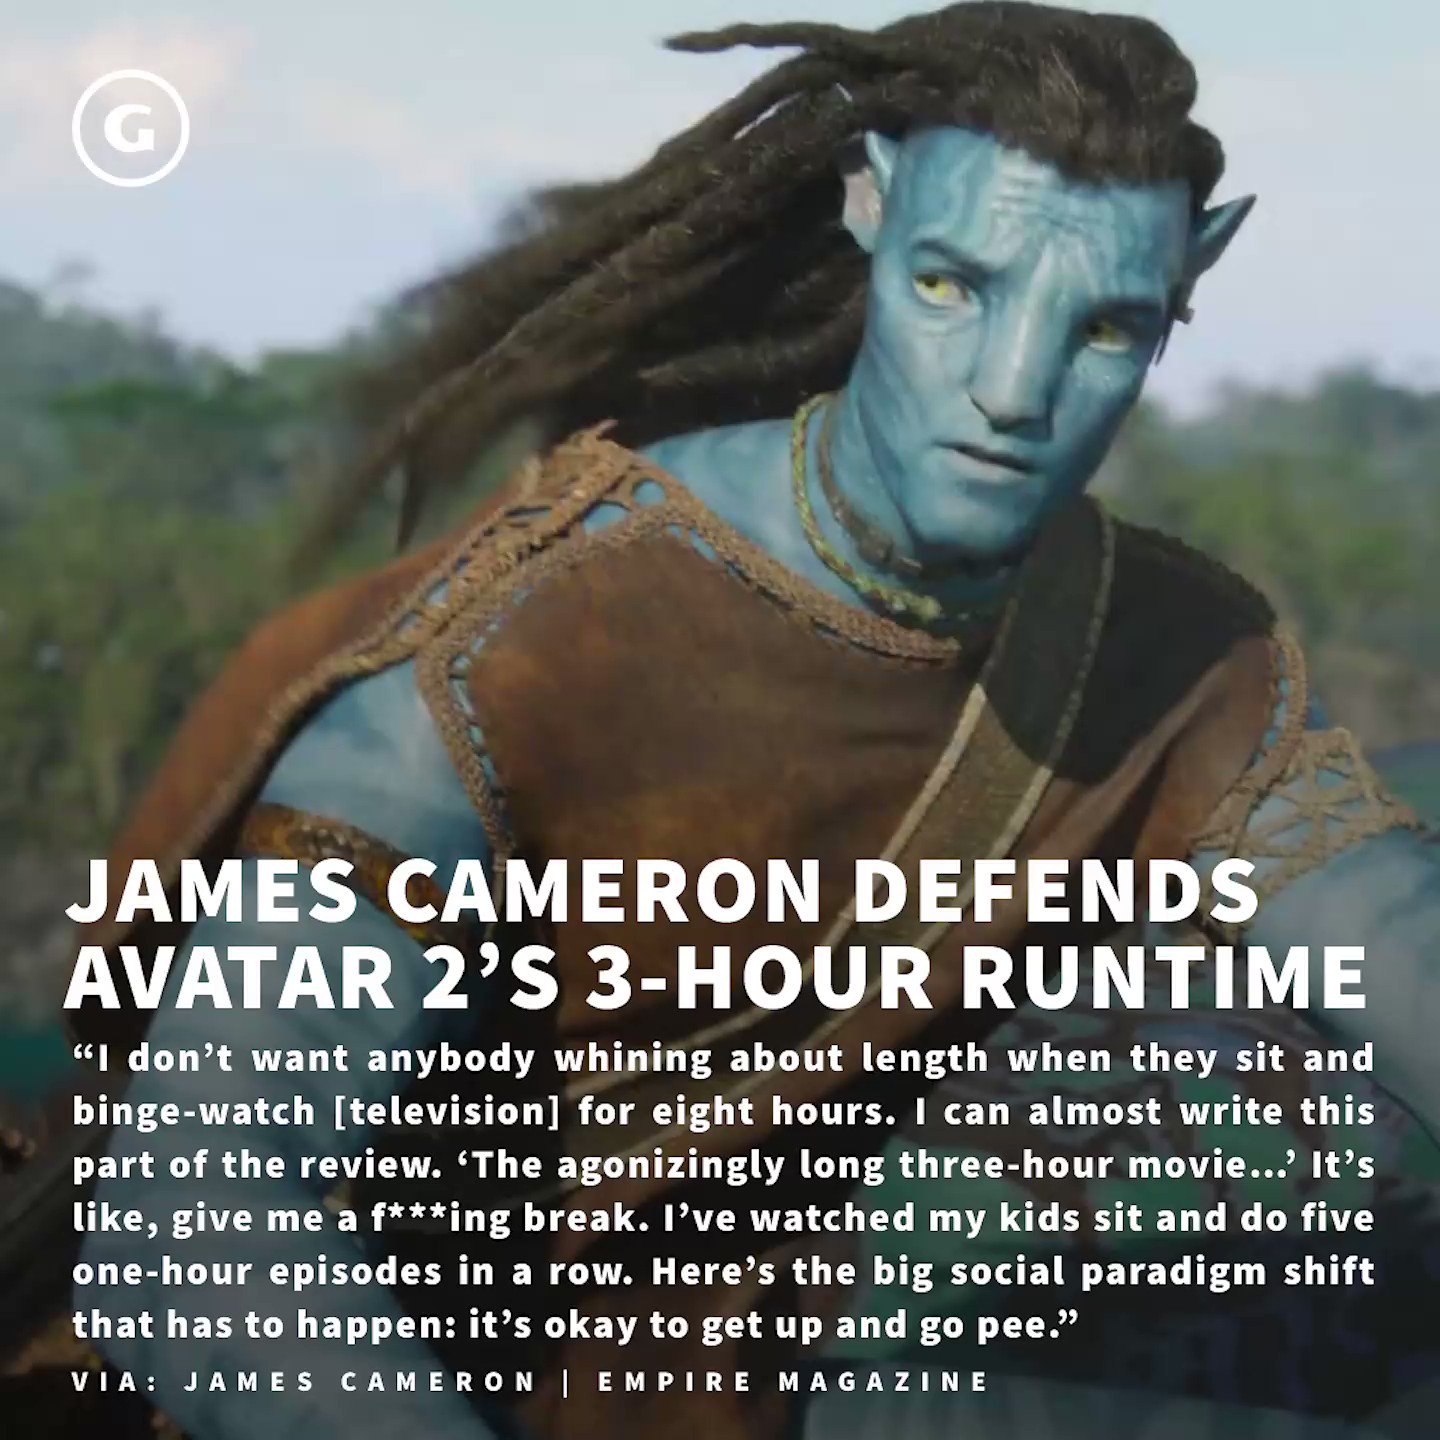 James Cameron Says Avatar 2 Profit Means 3 More Films